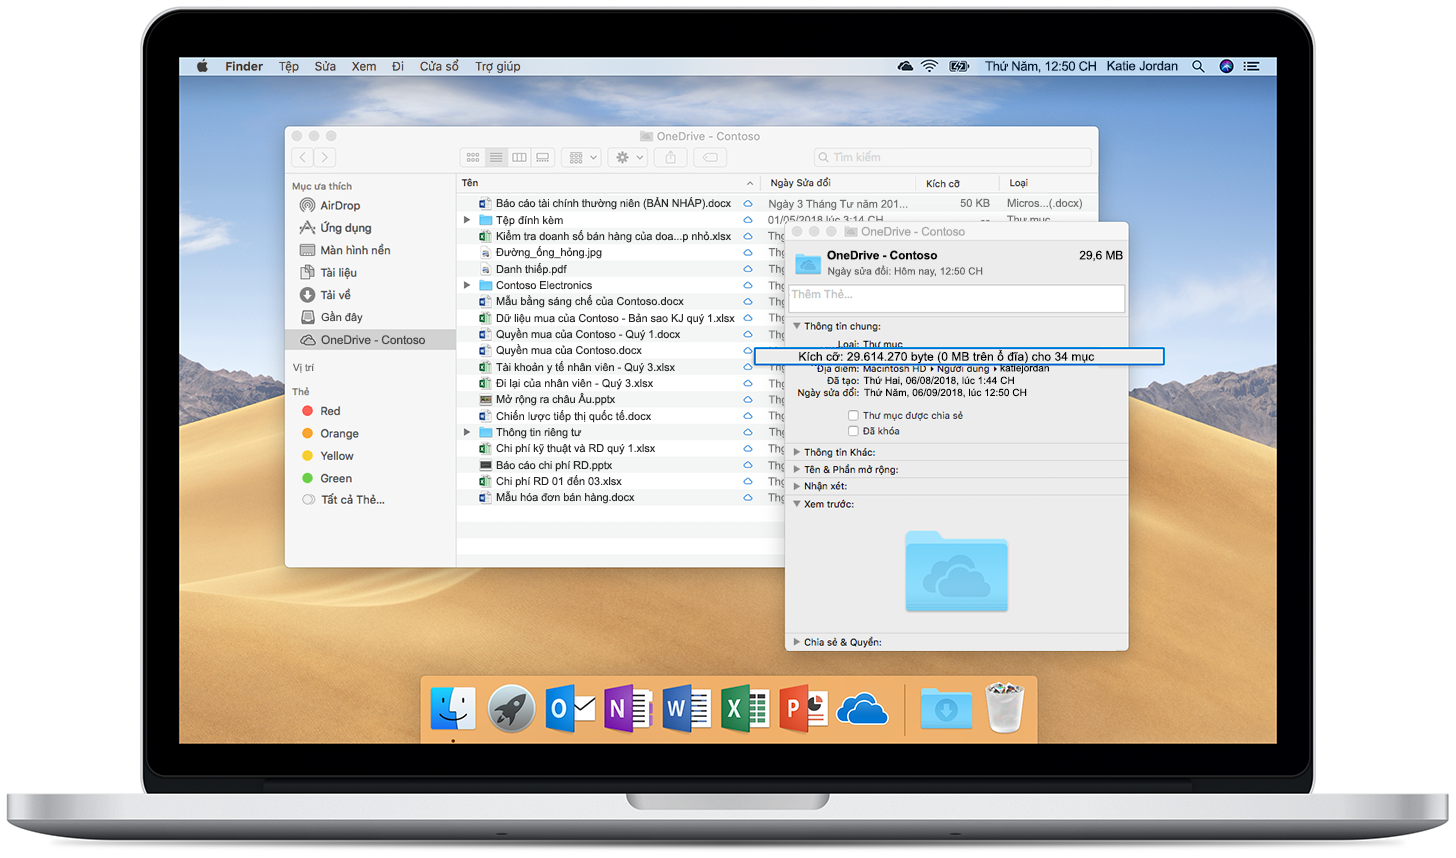 Hình ảnh hiển thị tính năng Tệp Theo Yêu cầu trong OneDrive trên một máy Mac đang mở.